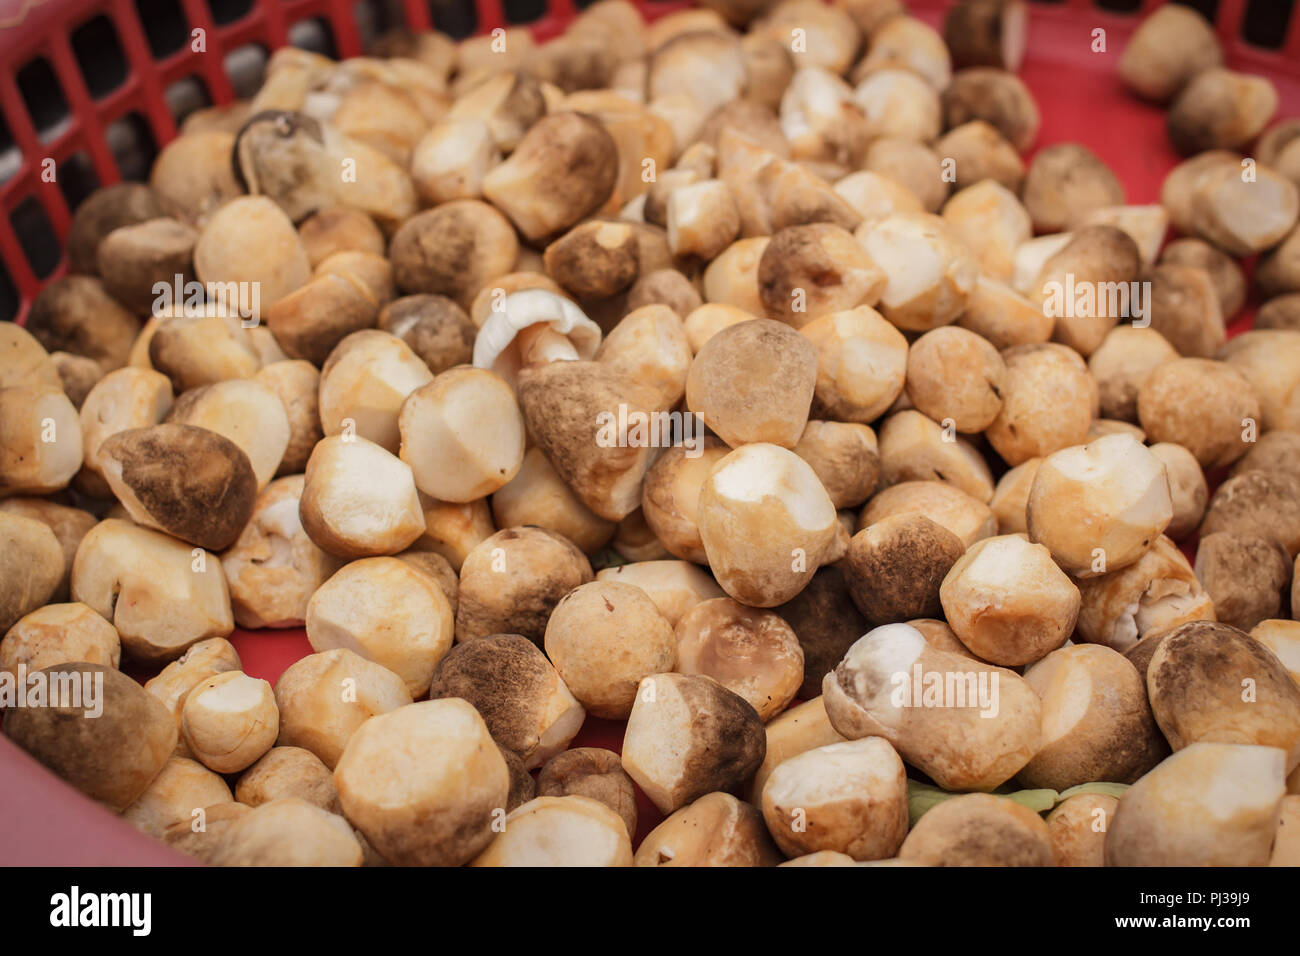 Straw mushrooms isolated on white background Stock Photo - Alamy